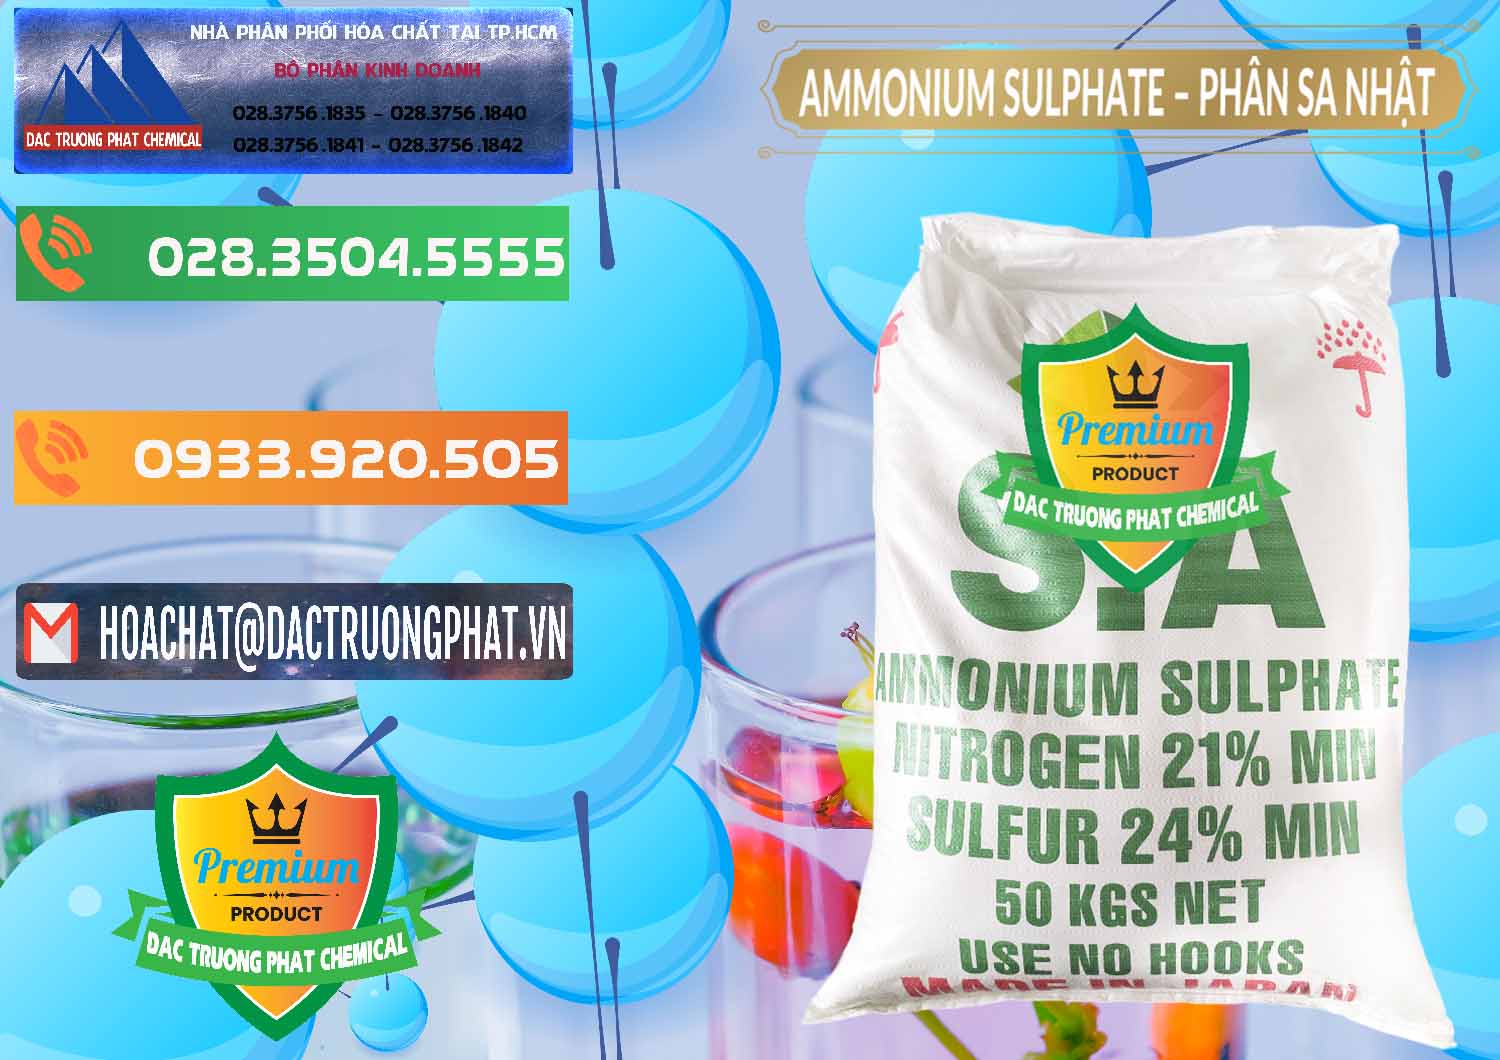 Nơi chuyên phân phối & bán Ammonium Sulphate – Phân Sa Nhật Japan - 0023 - Cty chuyên bán _ phân phối hóa chất tại TP.HCM - hoachatxulynuoc.com.vn